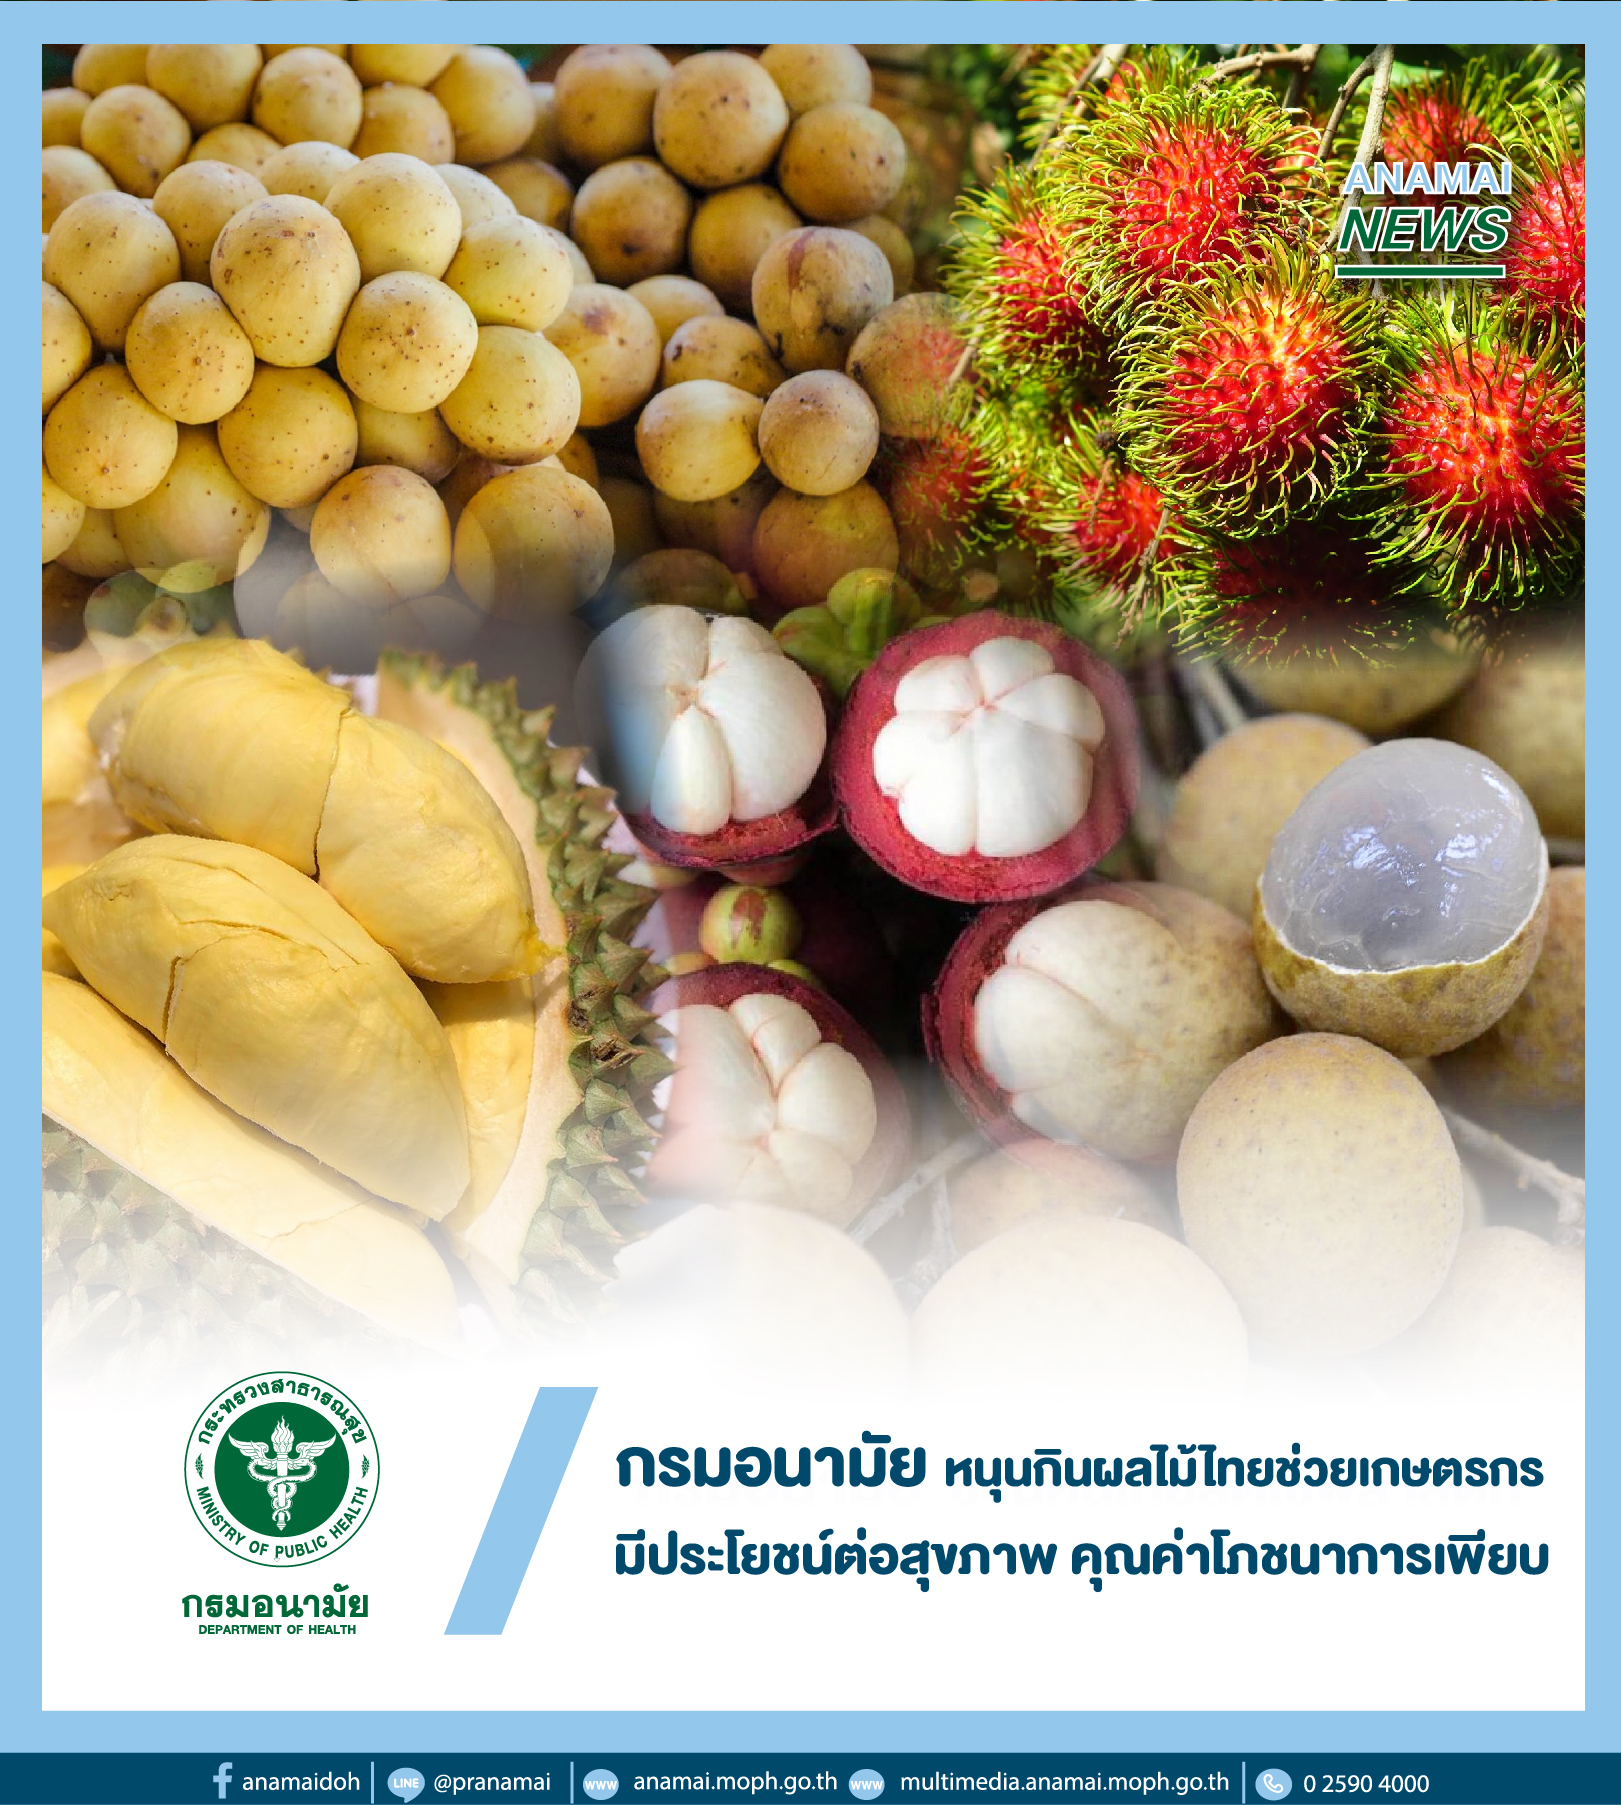 ​กรมอนามัย กระทรวงสาธารณสุข หนุนช่วยเกษตรกรหลังปัญหาราคาผลผลิตทางการเกษตรตามฤดูกาลตกต่ำ ชวนคนไทยกินผลไม้ไทย ชี้ มีประโยชน์ต่อสุขภาพ และมีคุณค่าโภชนาการเพียบ